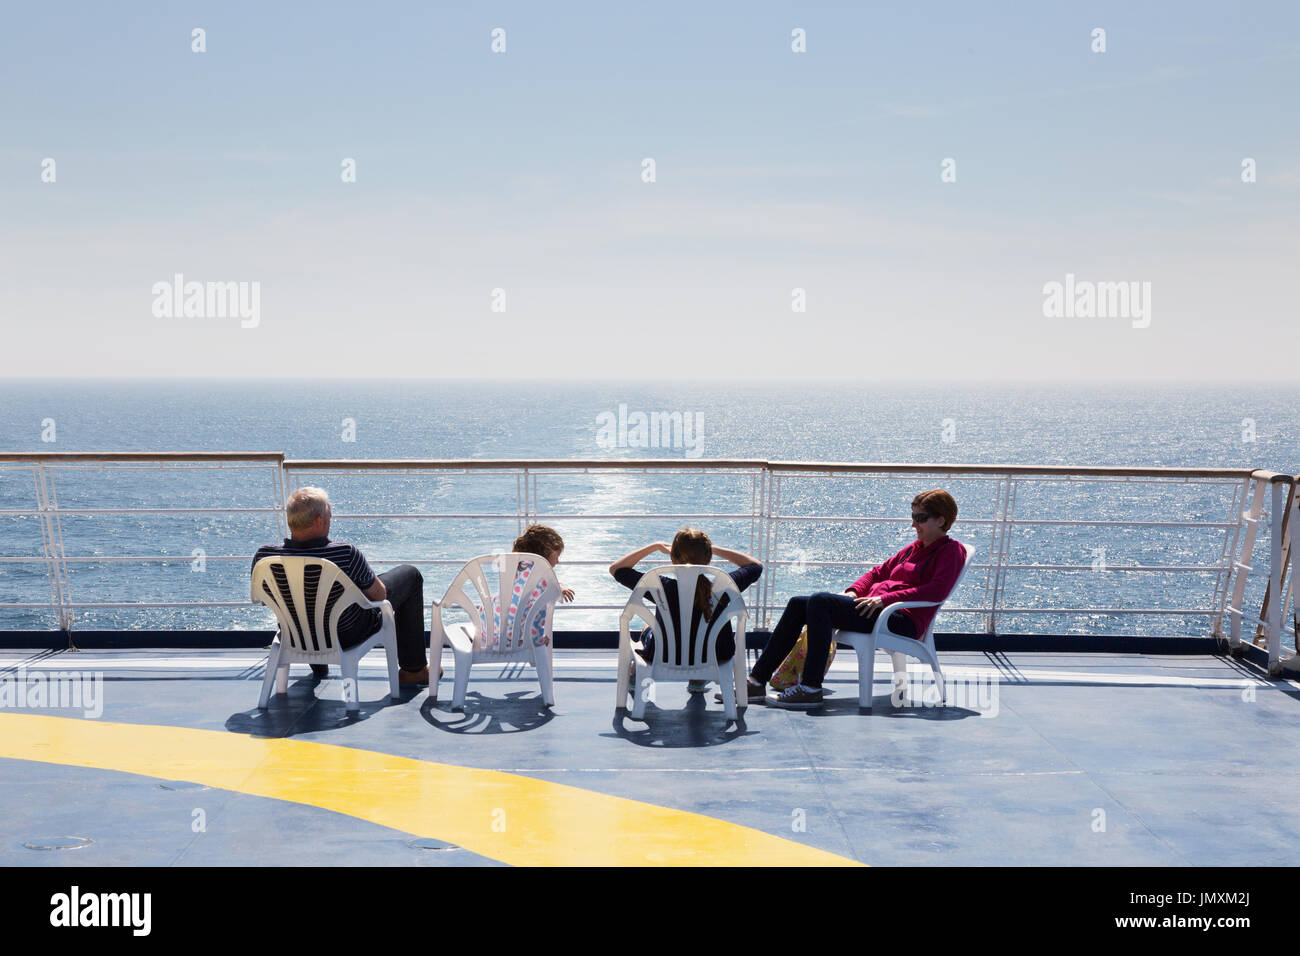 Partir en vacances en famille sur une croix channel ferry, Ferry Bretagne 'Bretagne', Brittany Ferries de Portsmouth, Royaume-uni à St Malo, France, Europe Banque D'Images